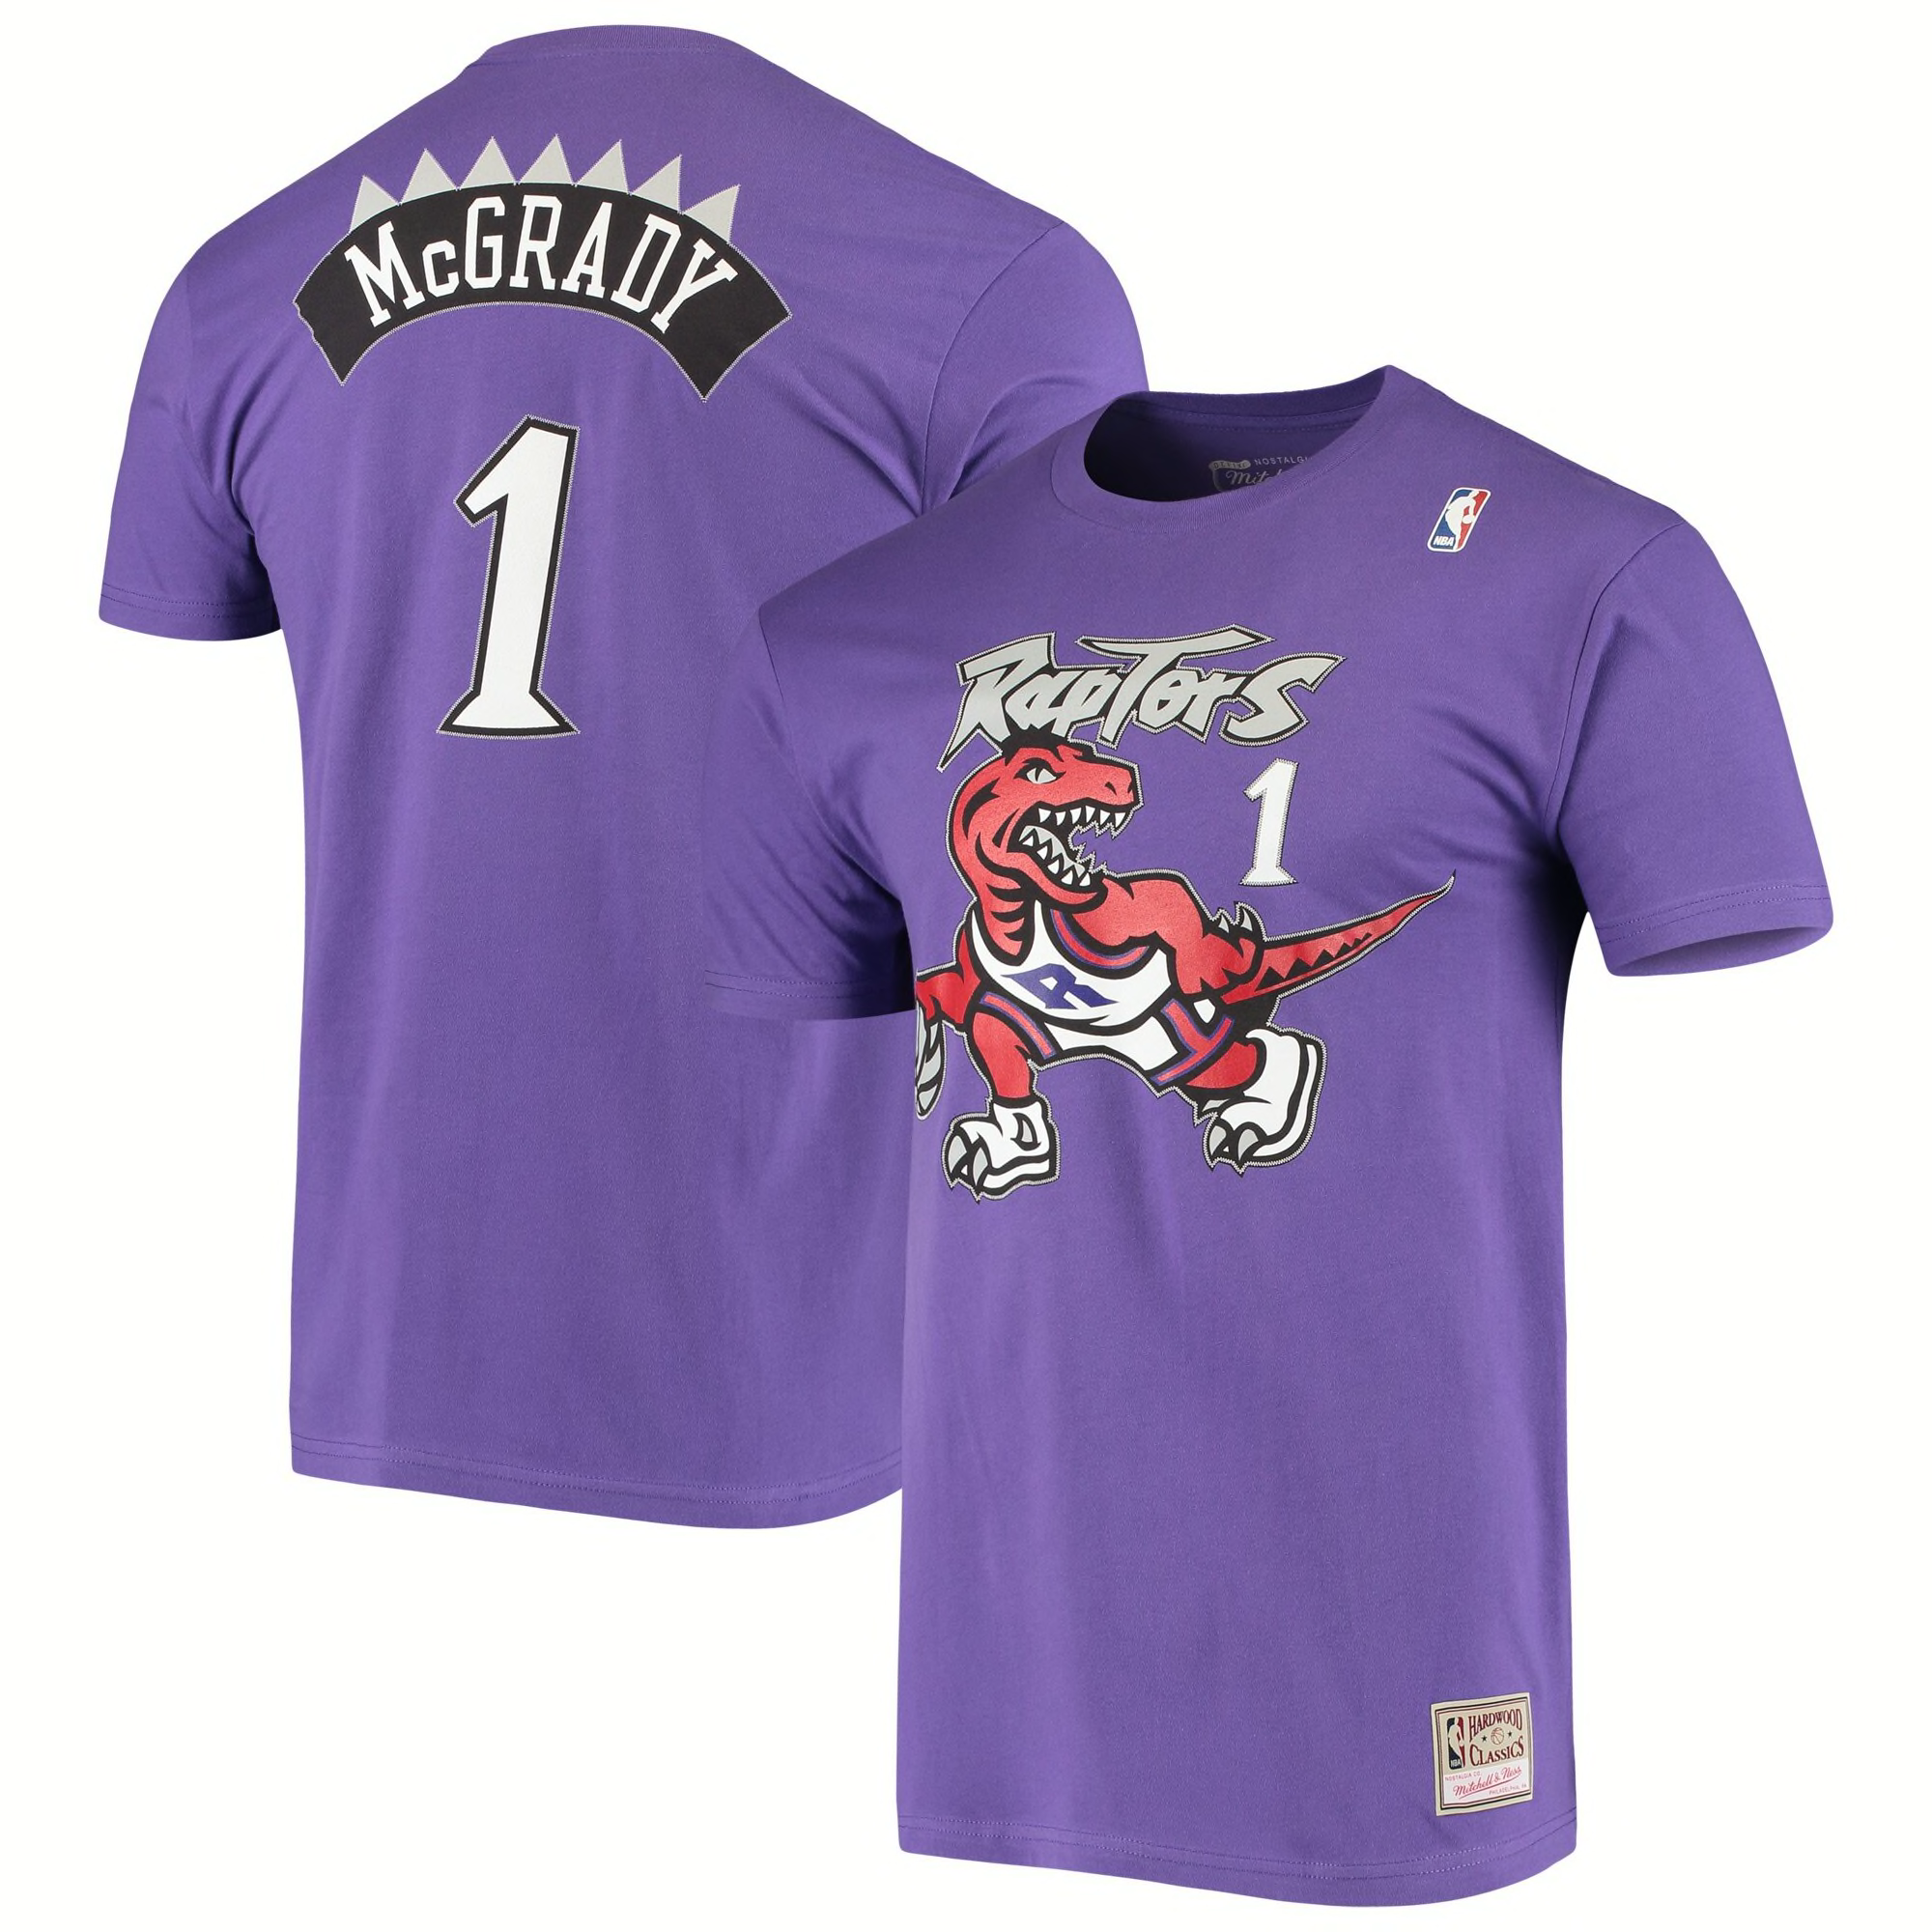 It's back! Raptors to wear purple throwback jerseys against